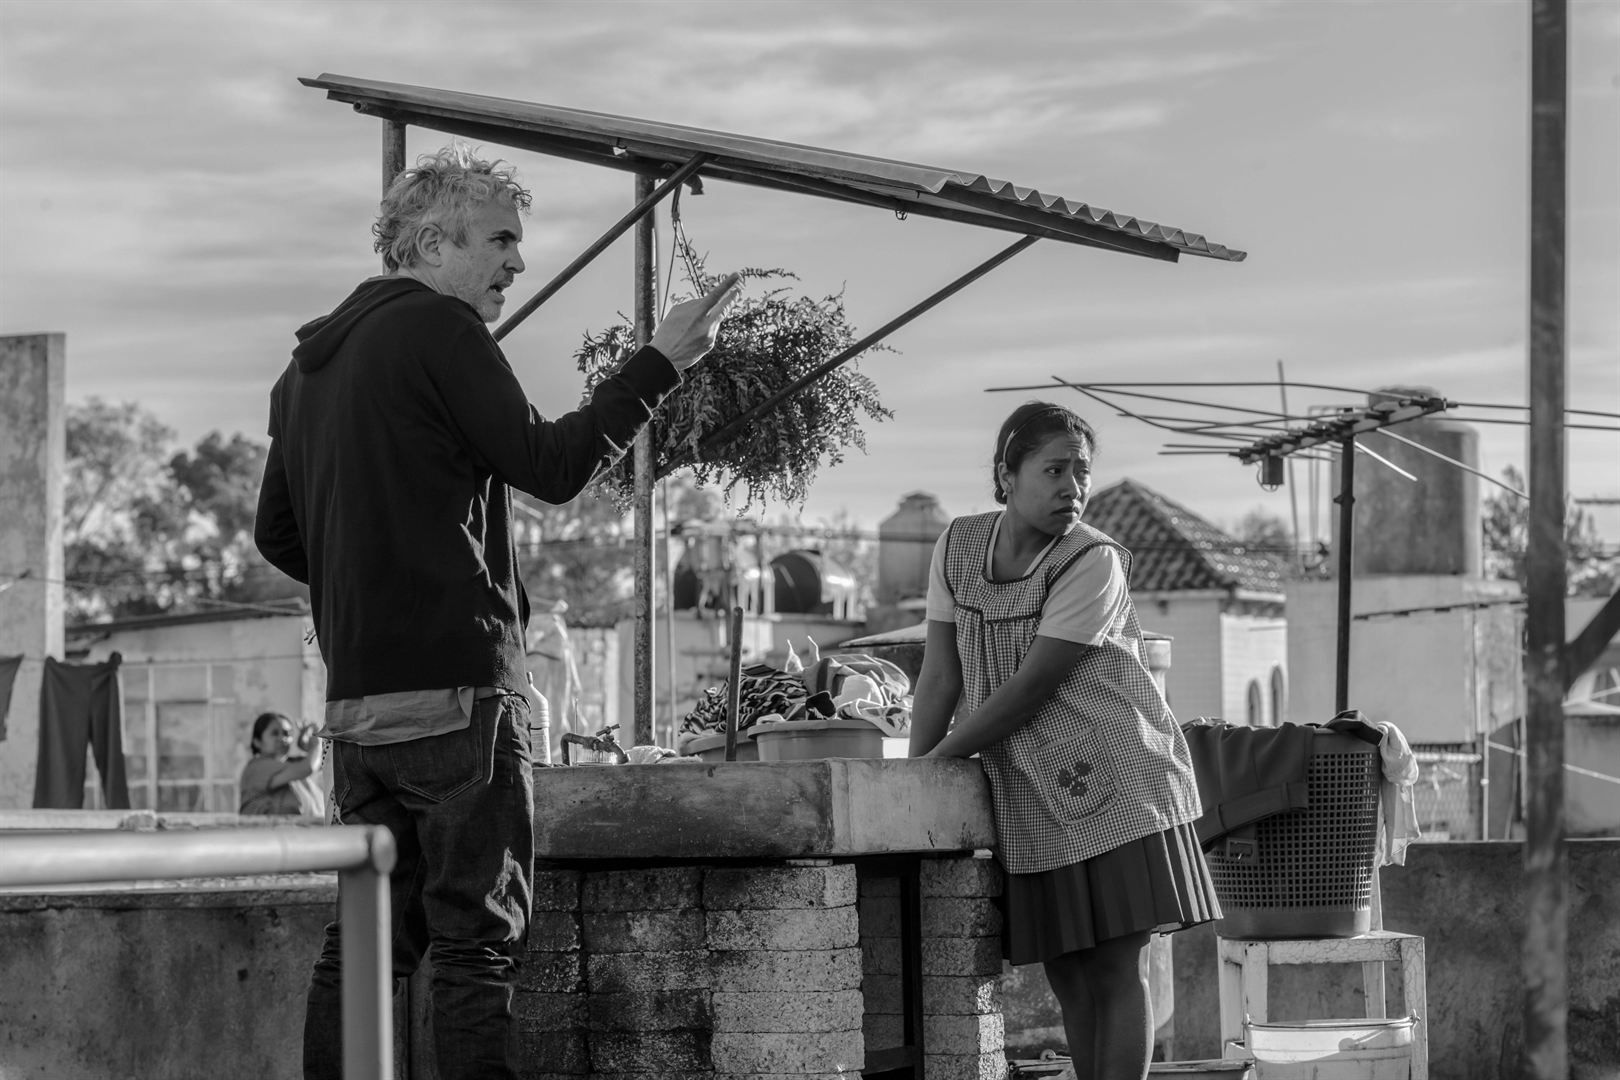 Roma': 10 datos de la película de Alfonso Cuarón